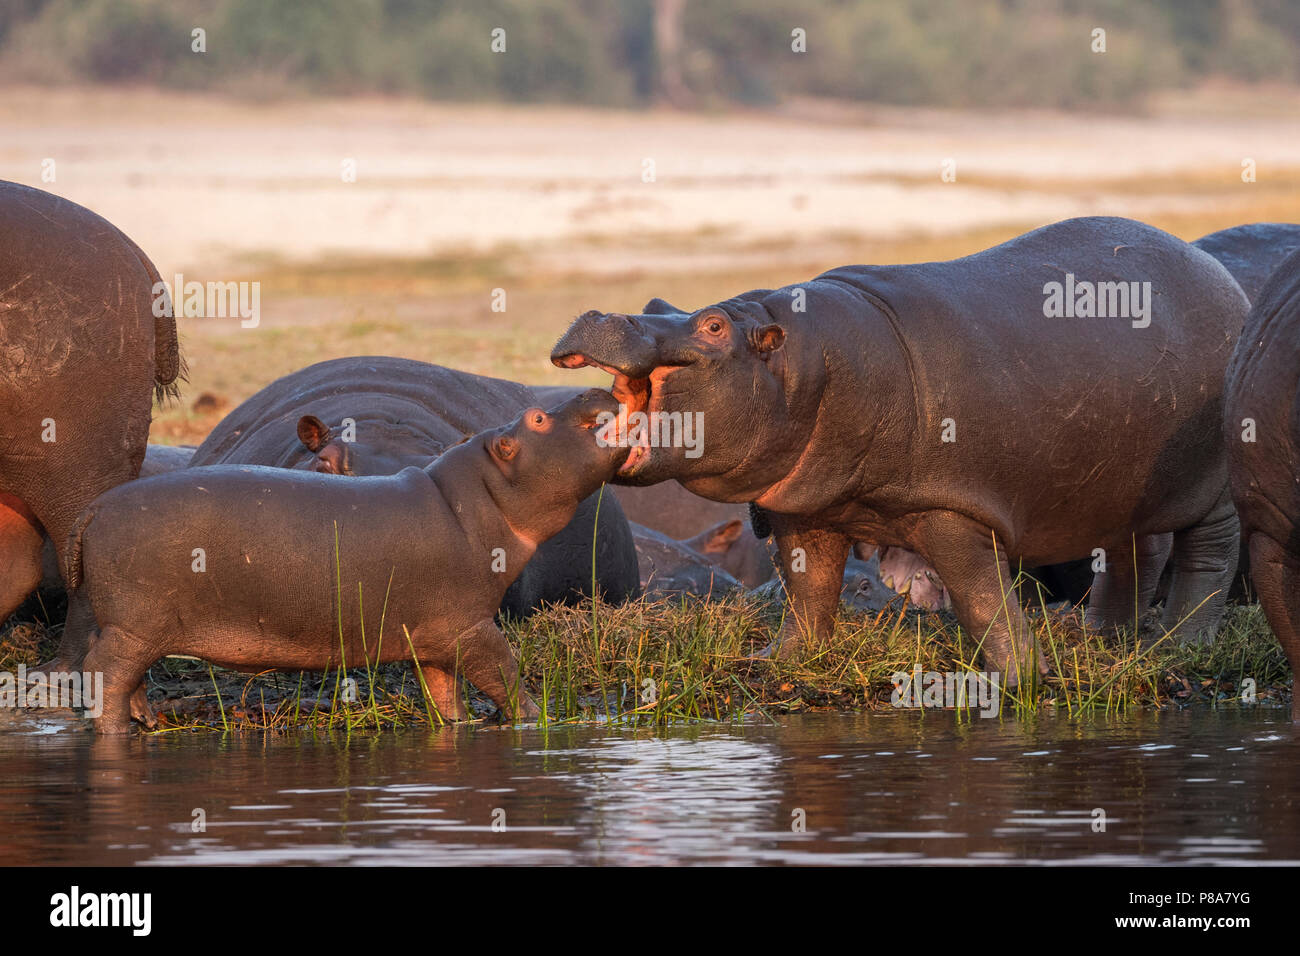 Hippos (Hippopotamus amphibius), Chobe river, Botswana Stock Photo